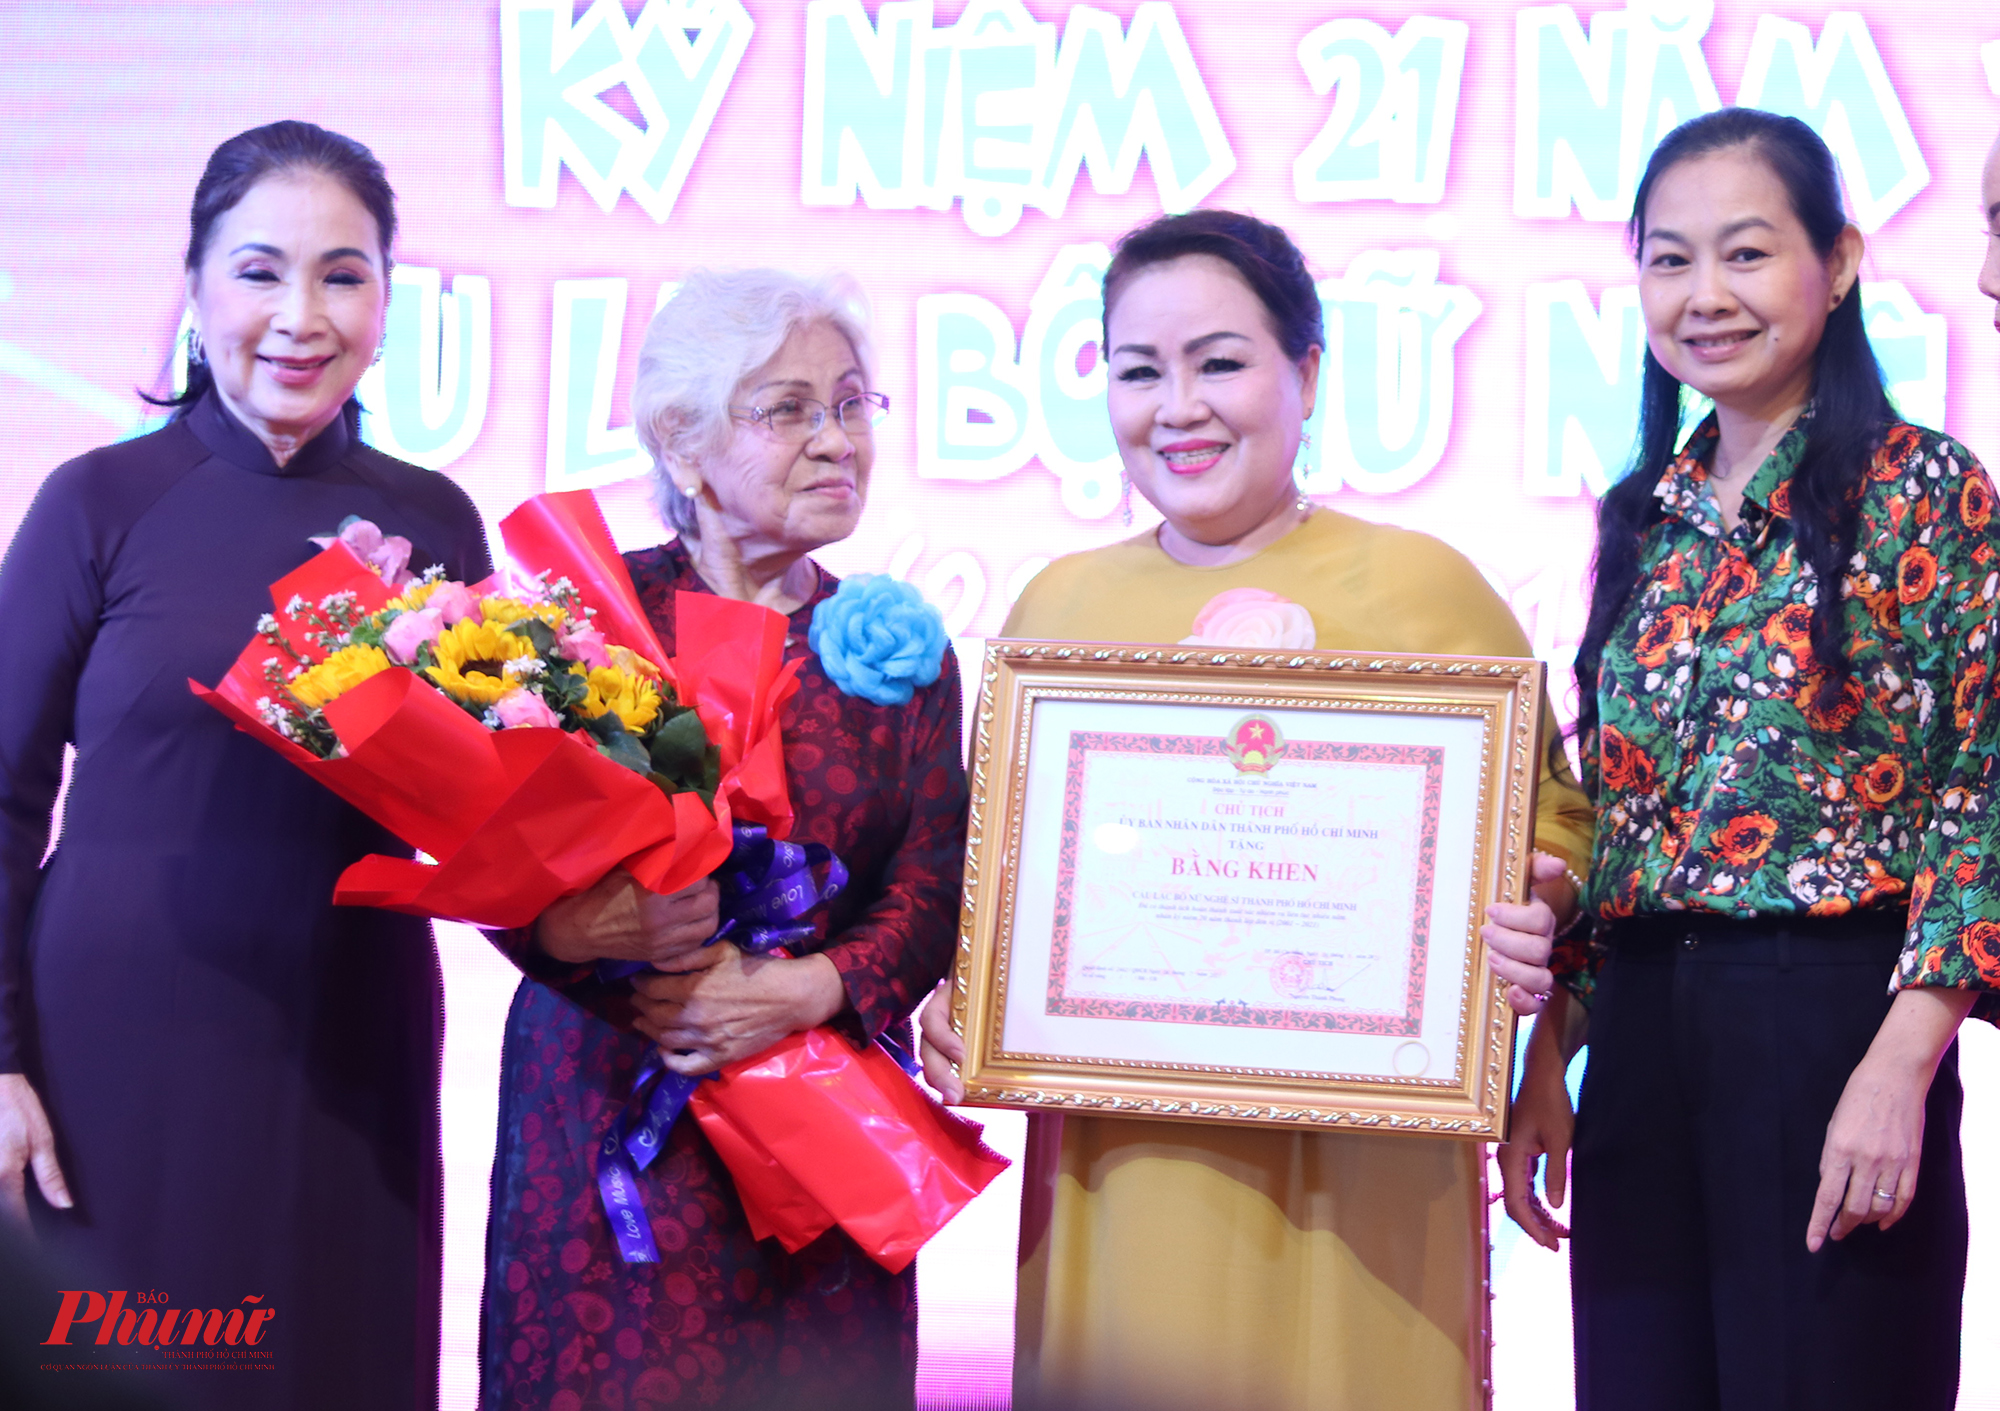 Câu lạc bộ nhận được bằng khen từ UBND TPHCM với những đóng góp thời gian qua. Bà Lâm Thị Ngọc Hoa (bìa phải) - Phó chủ tịch thường trực Hội Liên hiệp Phụ Nữ TPHCM trao bằng khen cho ban chủ nhiệm câu 